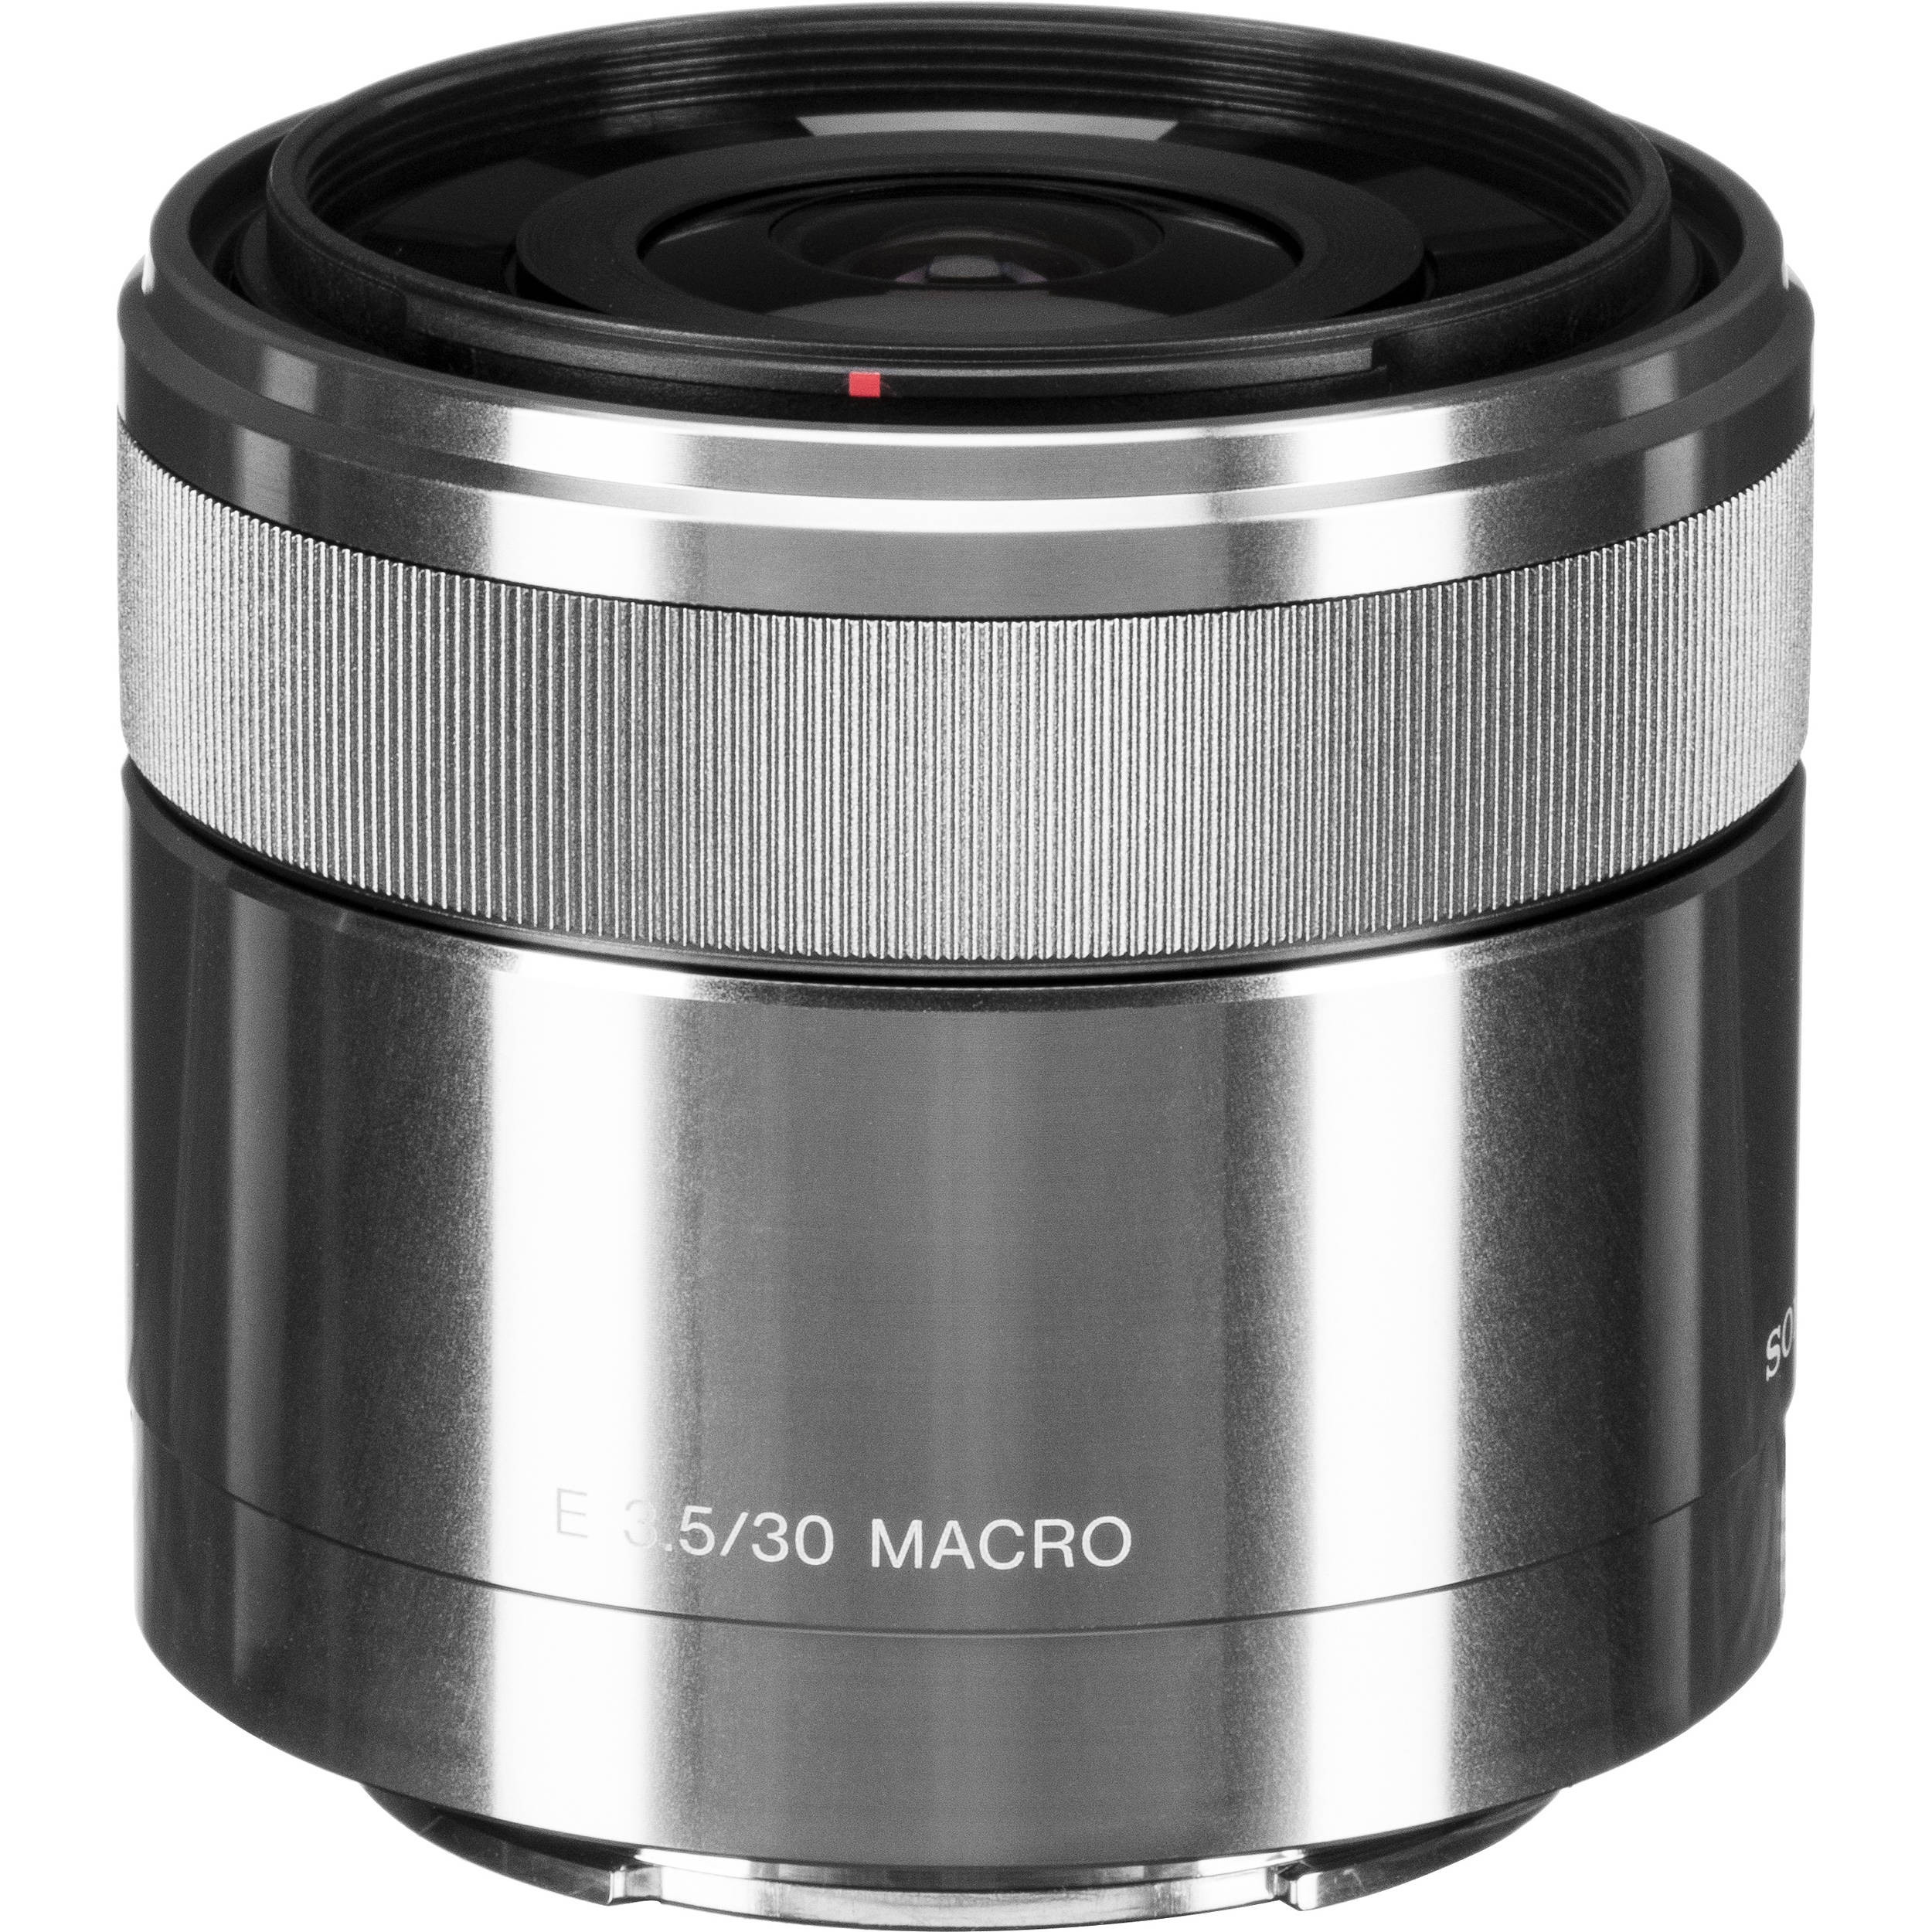 Ống kính Sony E 30mm f/3.5 Macro Chính Hãng - VJShop